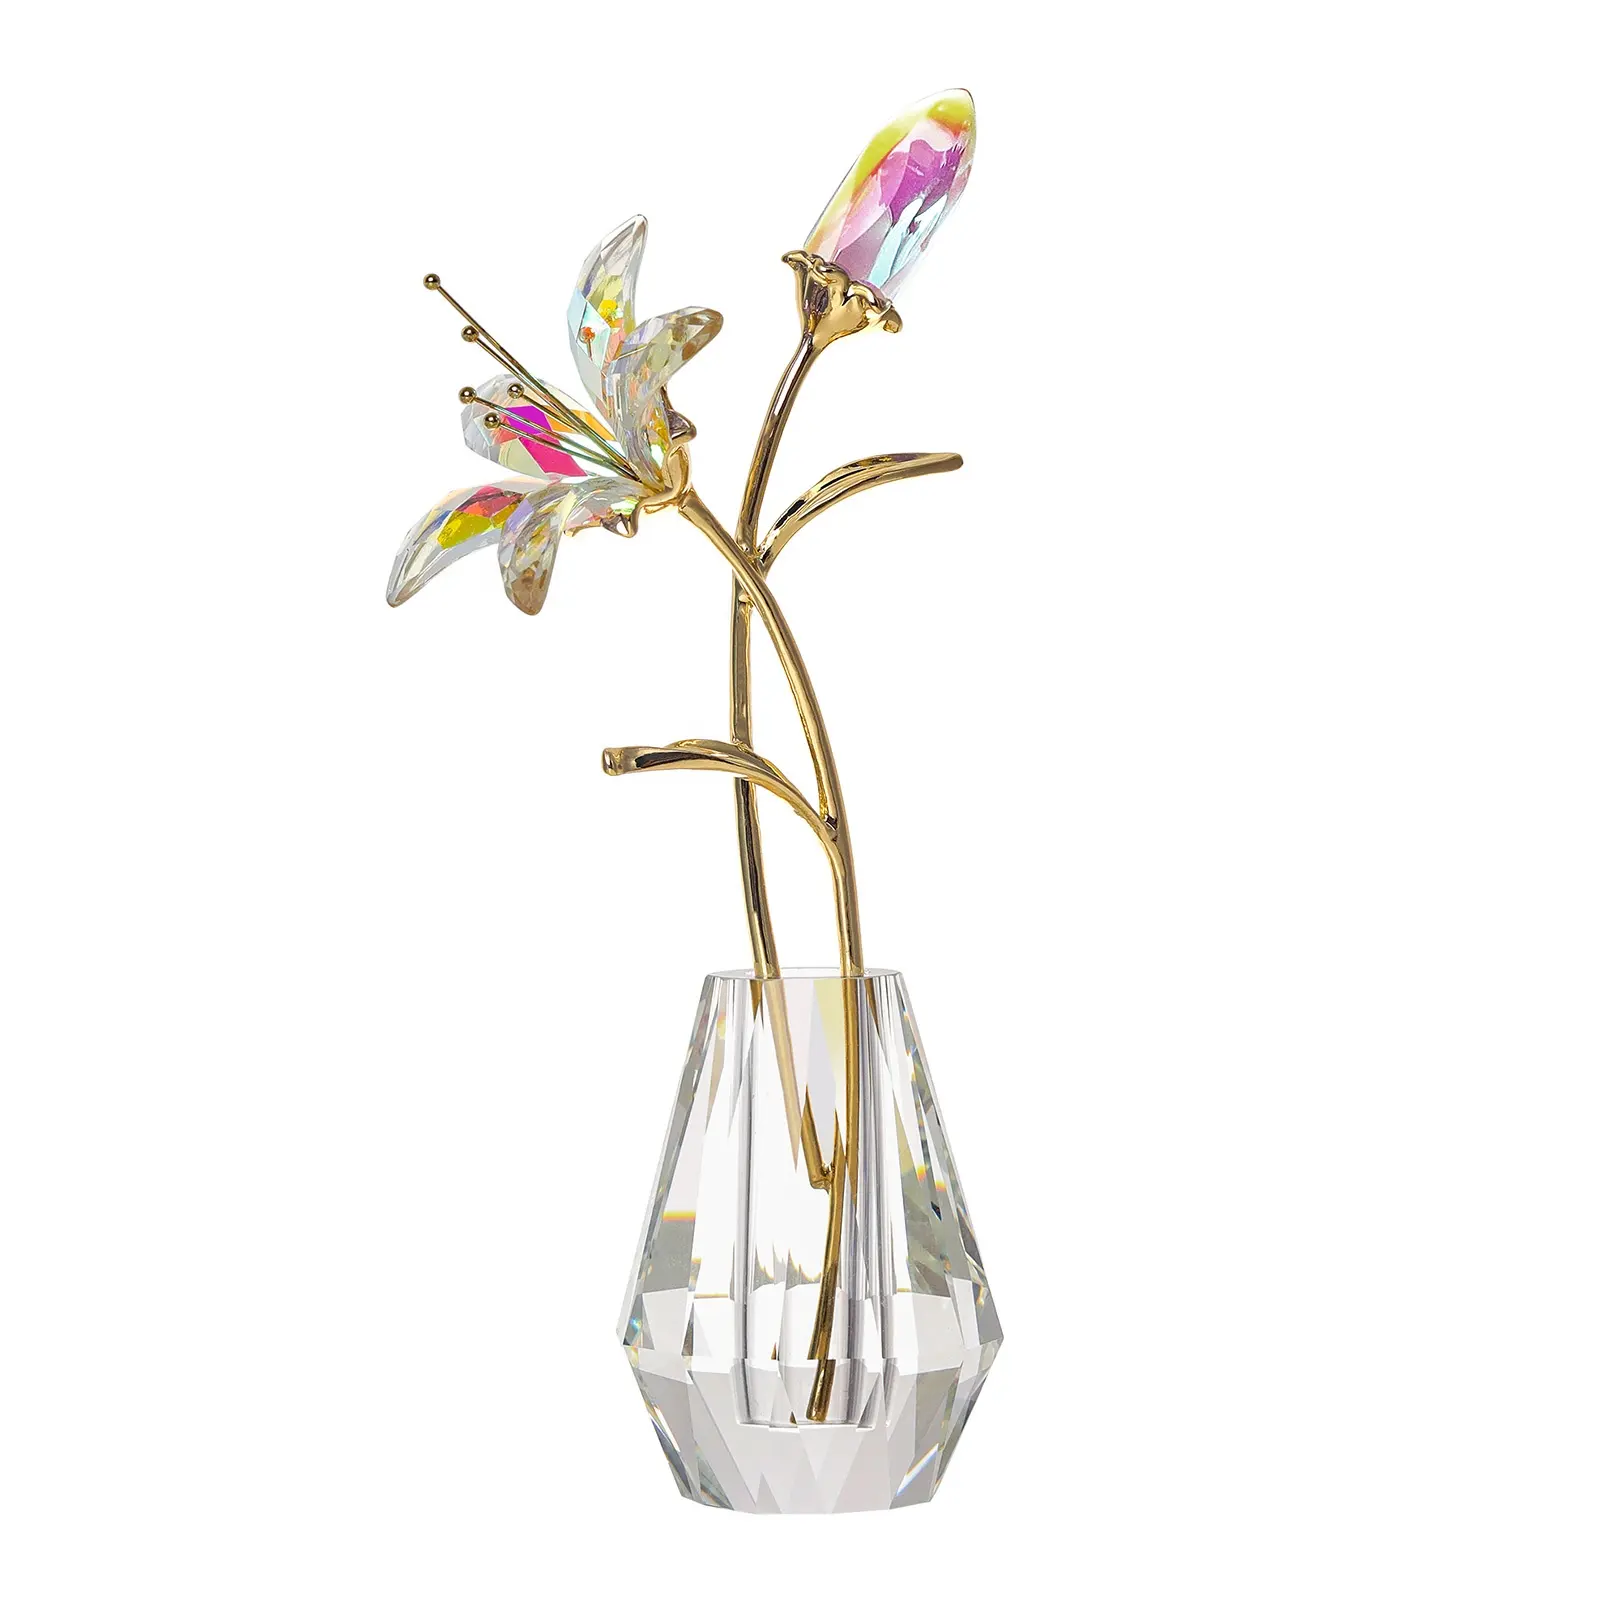 LONGWIN Kristal Bunga Lili Buatan dengan Vas Kristal-AB Coating Kristal Koleksi Figurines Hadiah untuk Hari Ibu